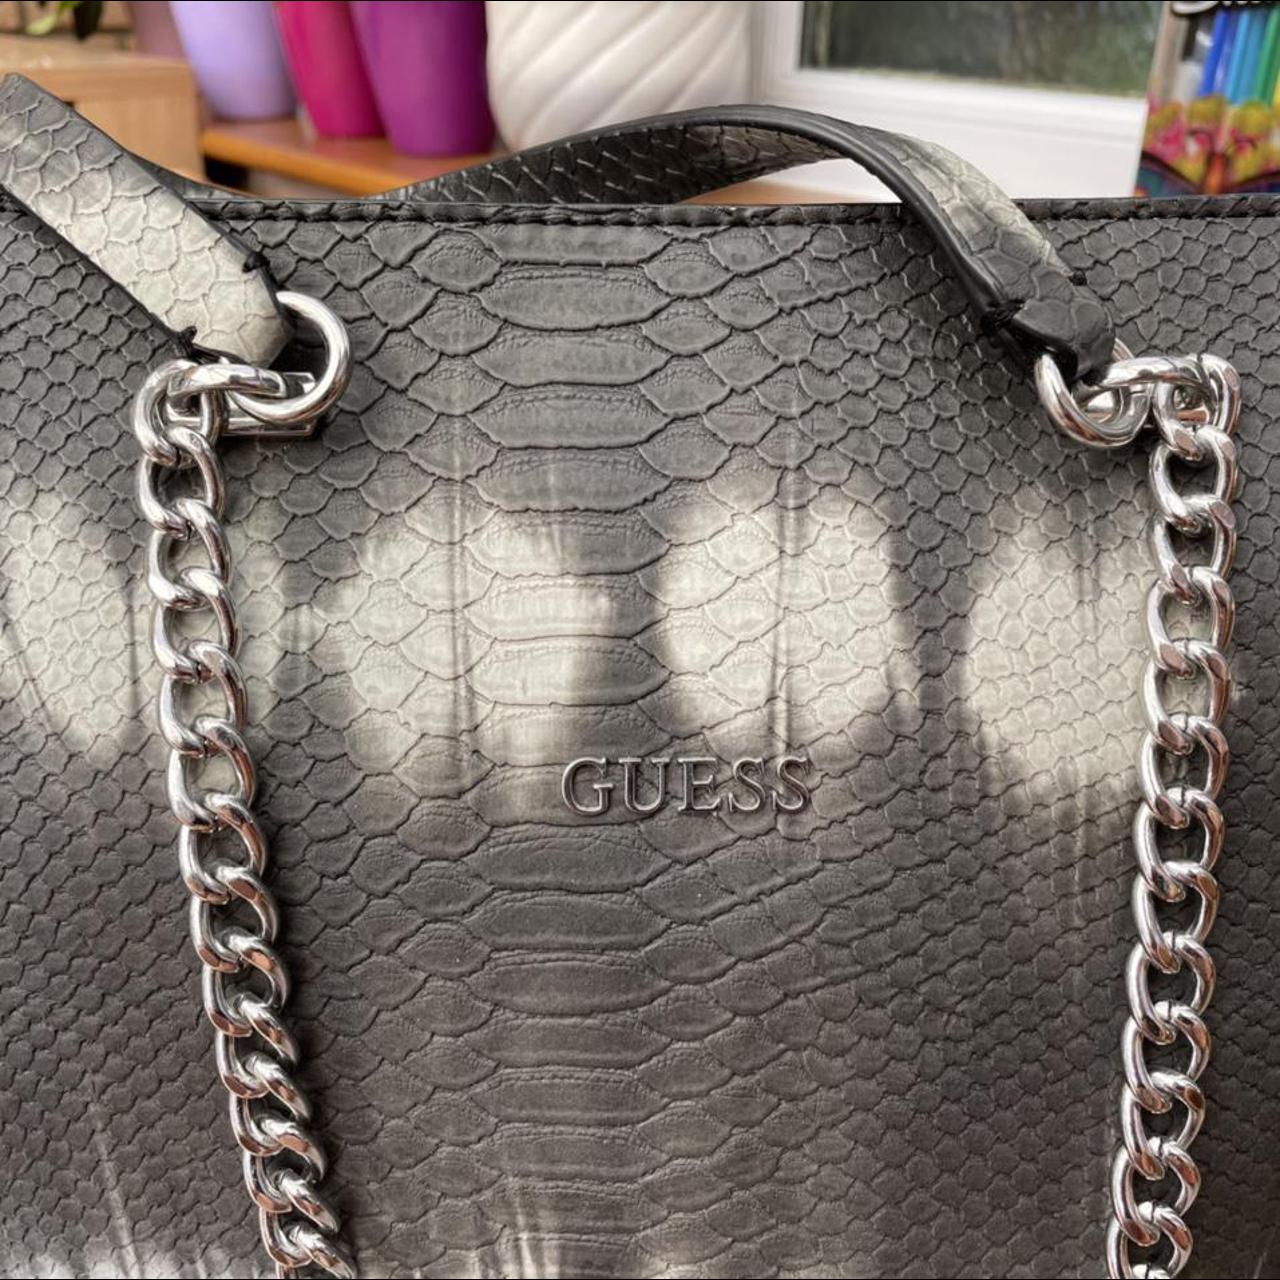 Guess Women's Bag (3)